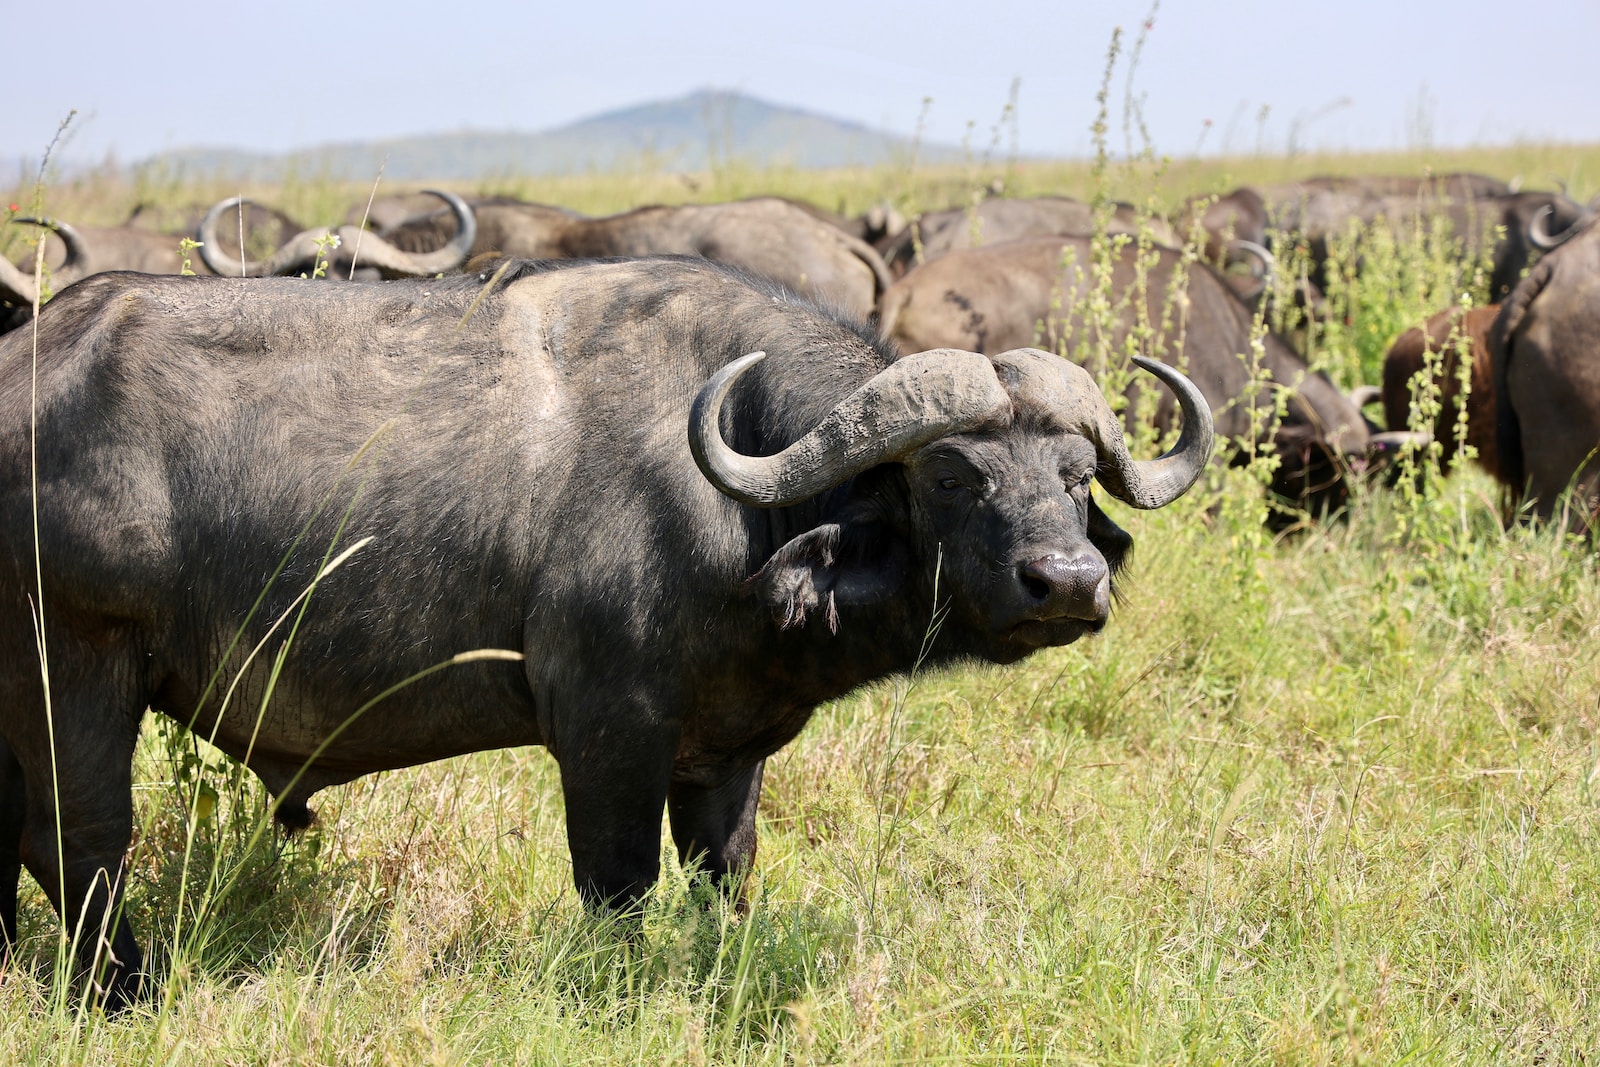 a herd of buffalo in a field